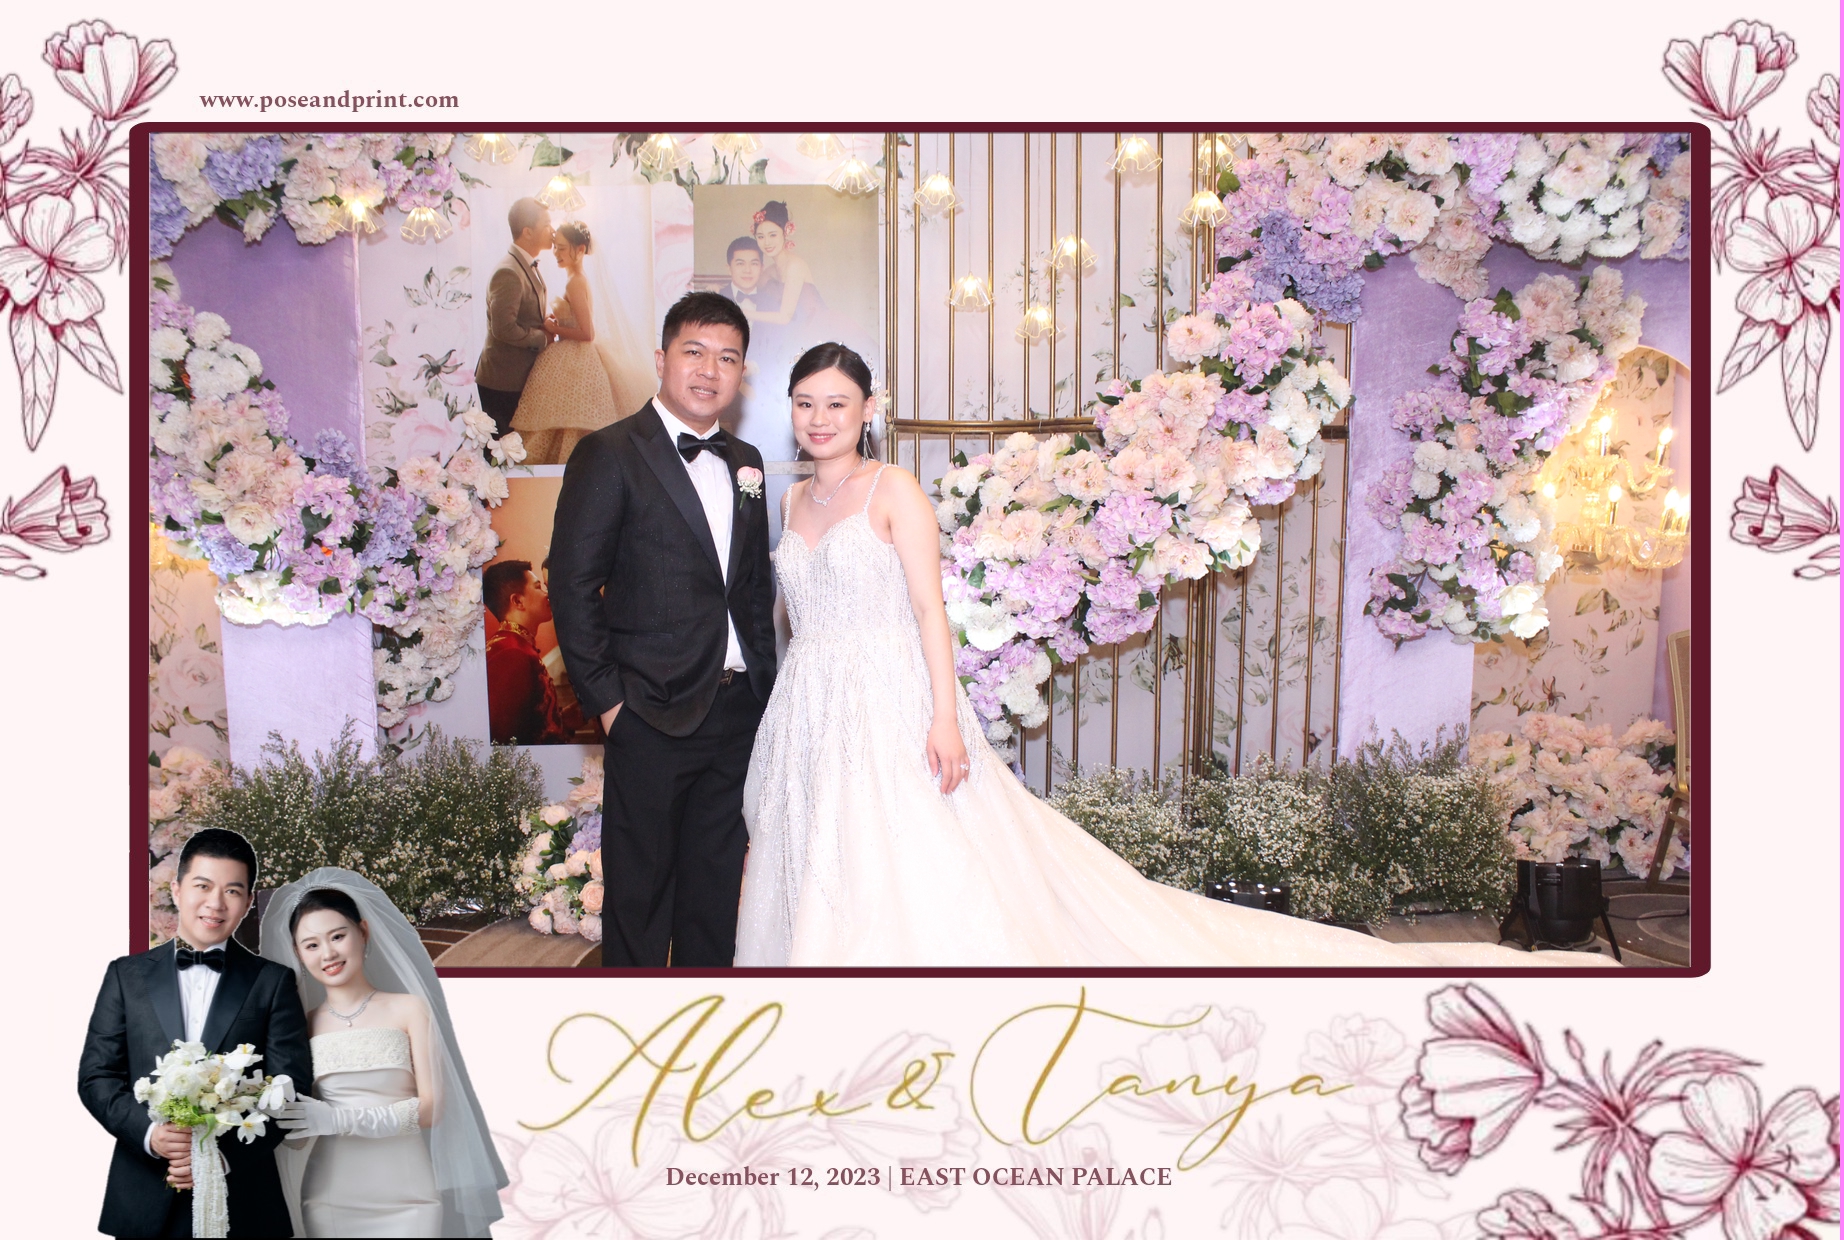 Alex and Tanya’s Wedding – Photoman